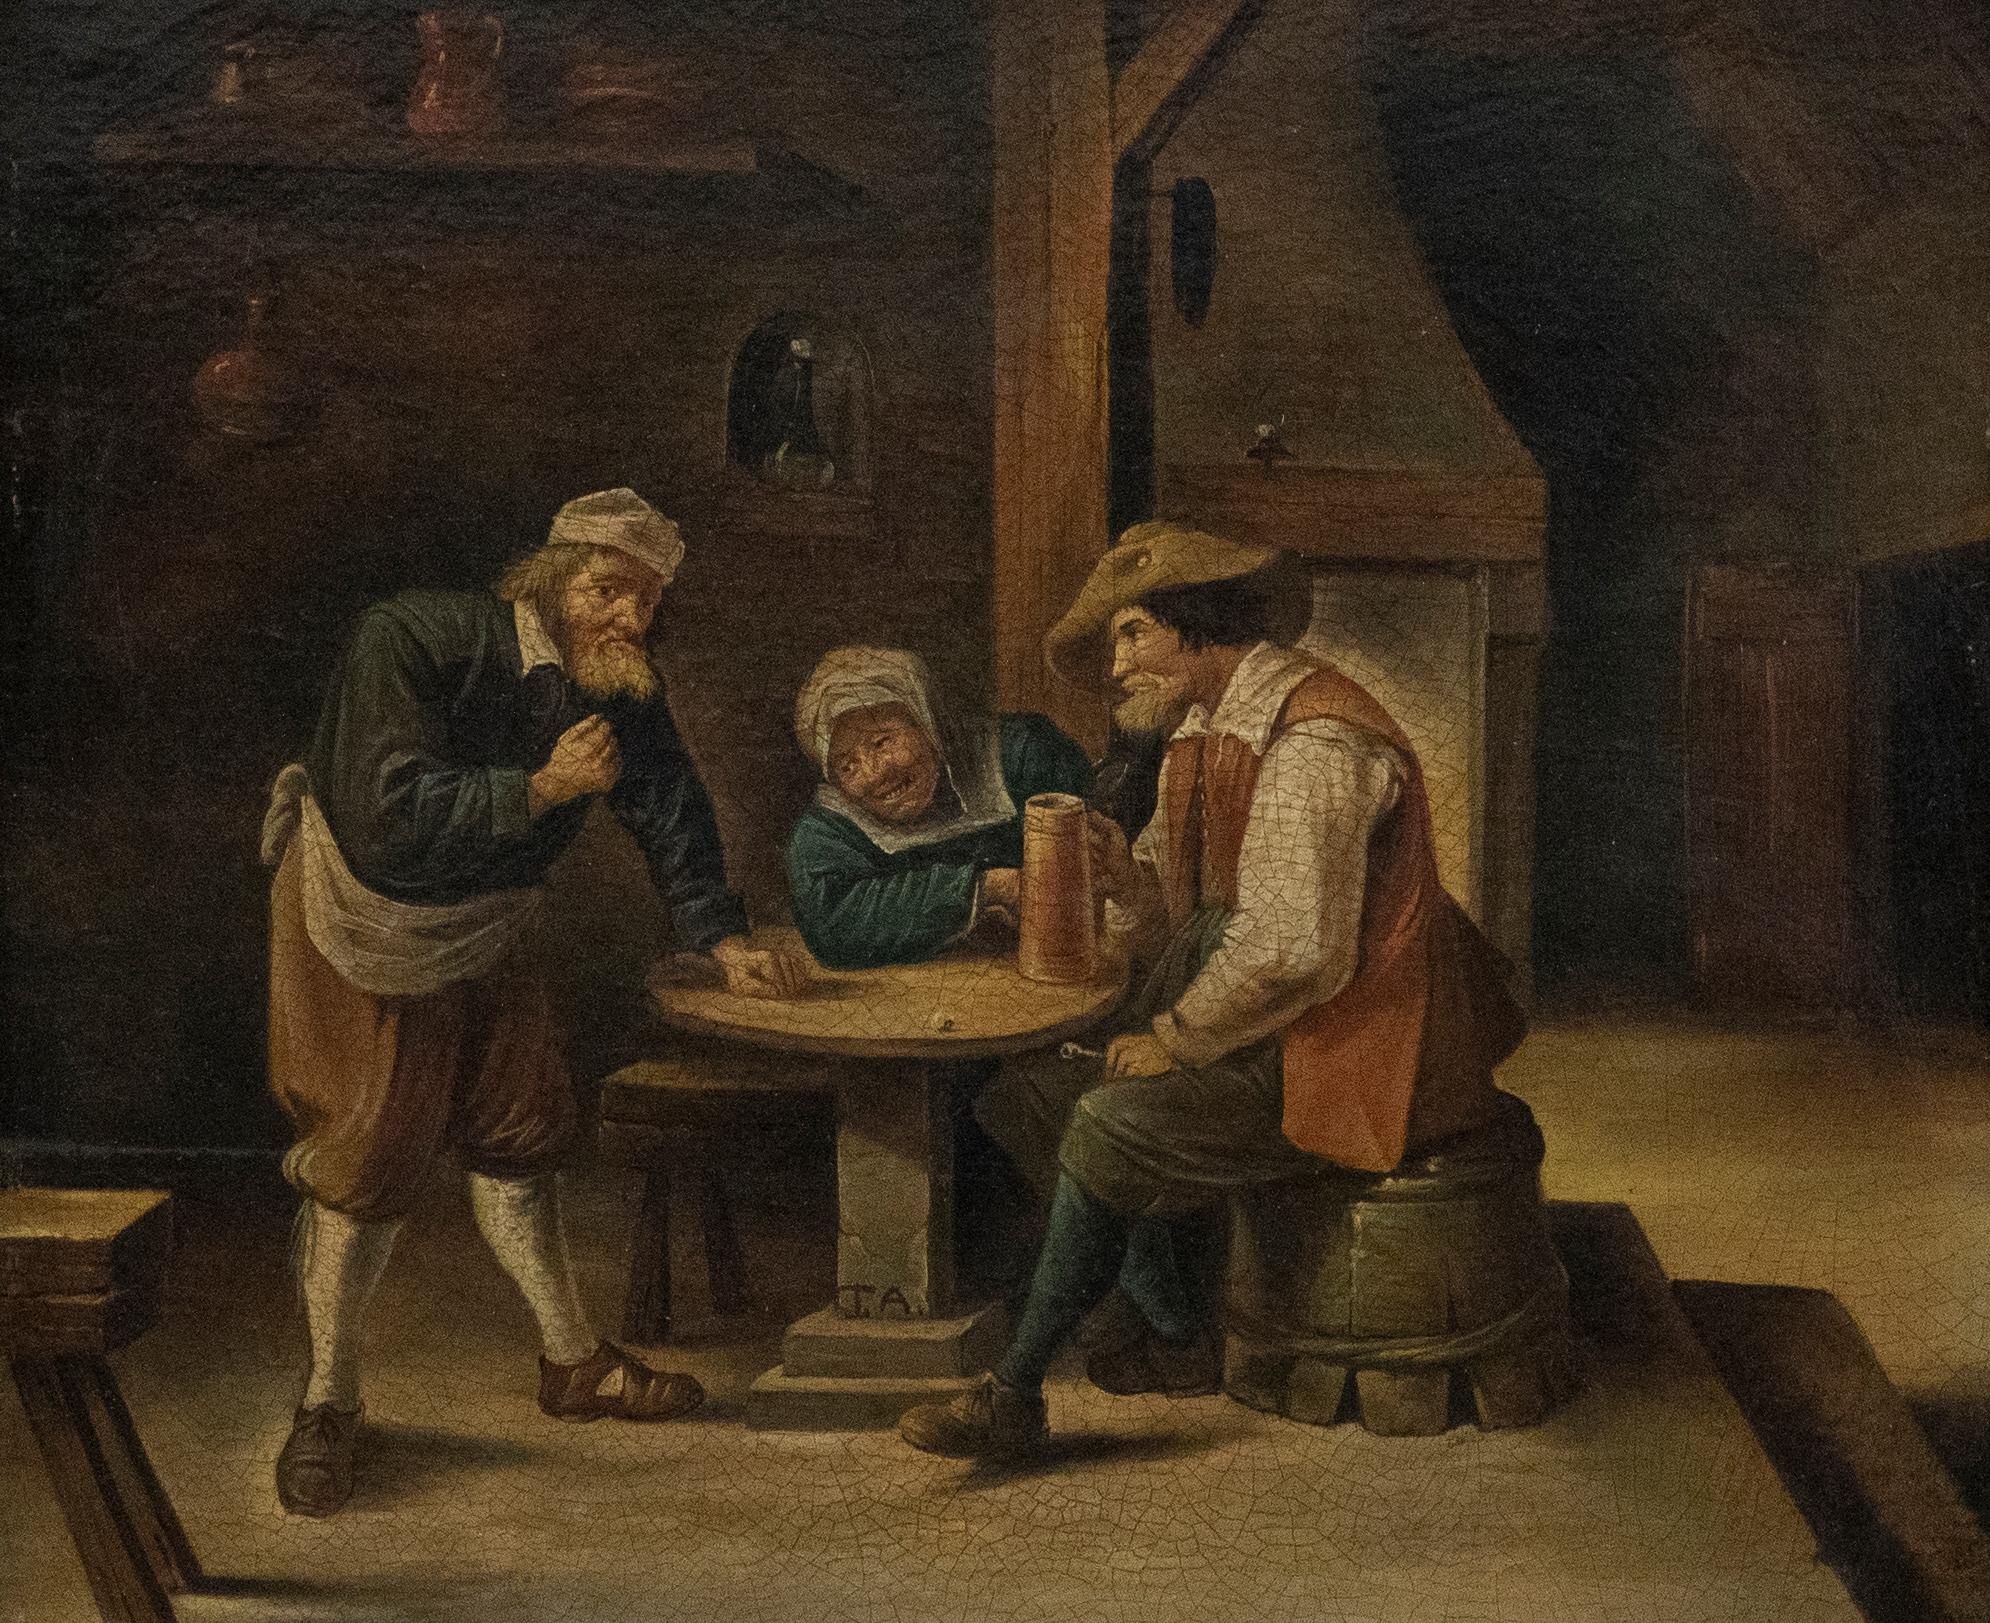 Nach Thomas van Apshoven (1622-1664) - Ölgemälde, Die Tavern, 19. Jahrhundert – Painting von Unknown